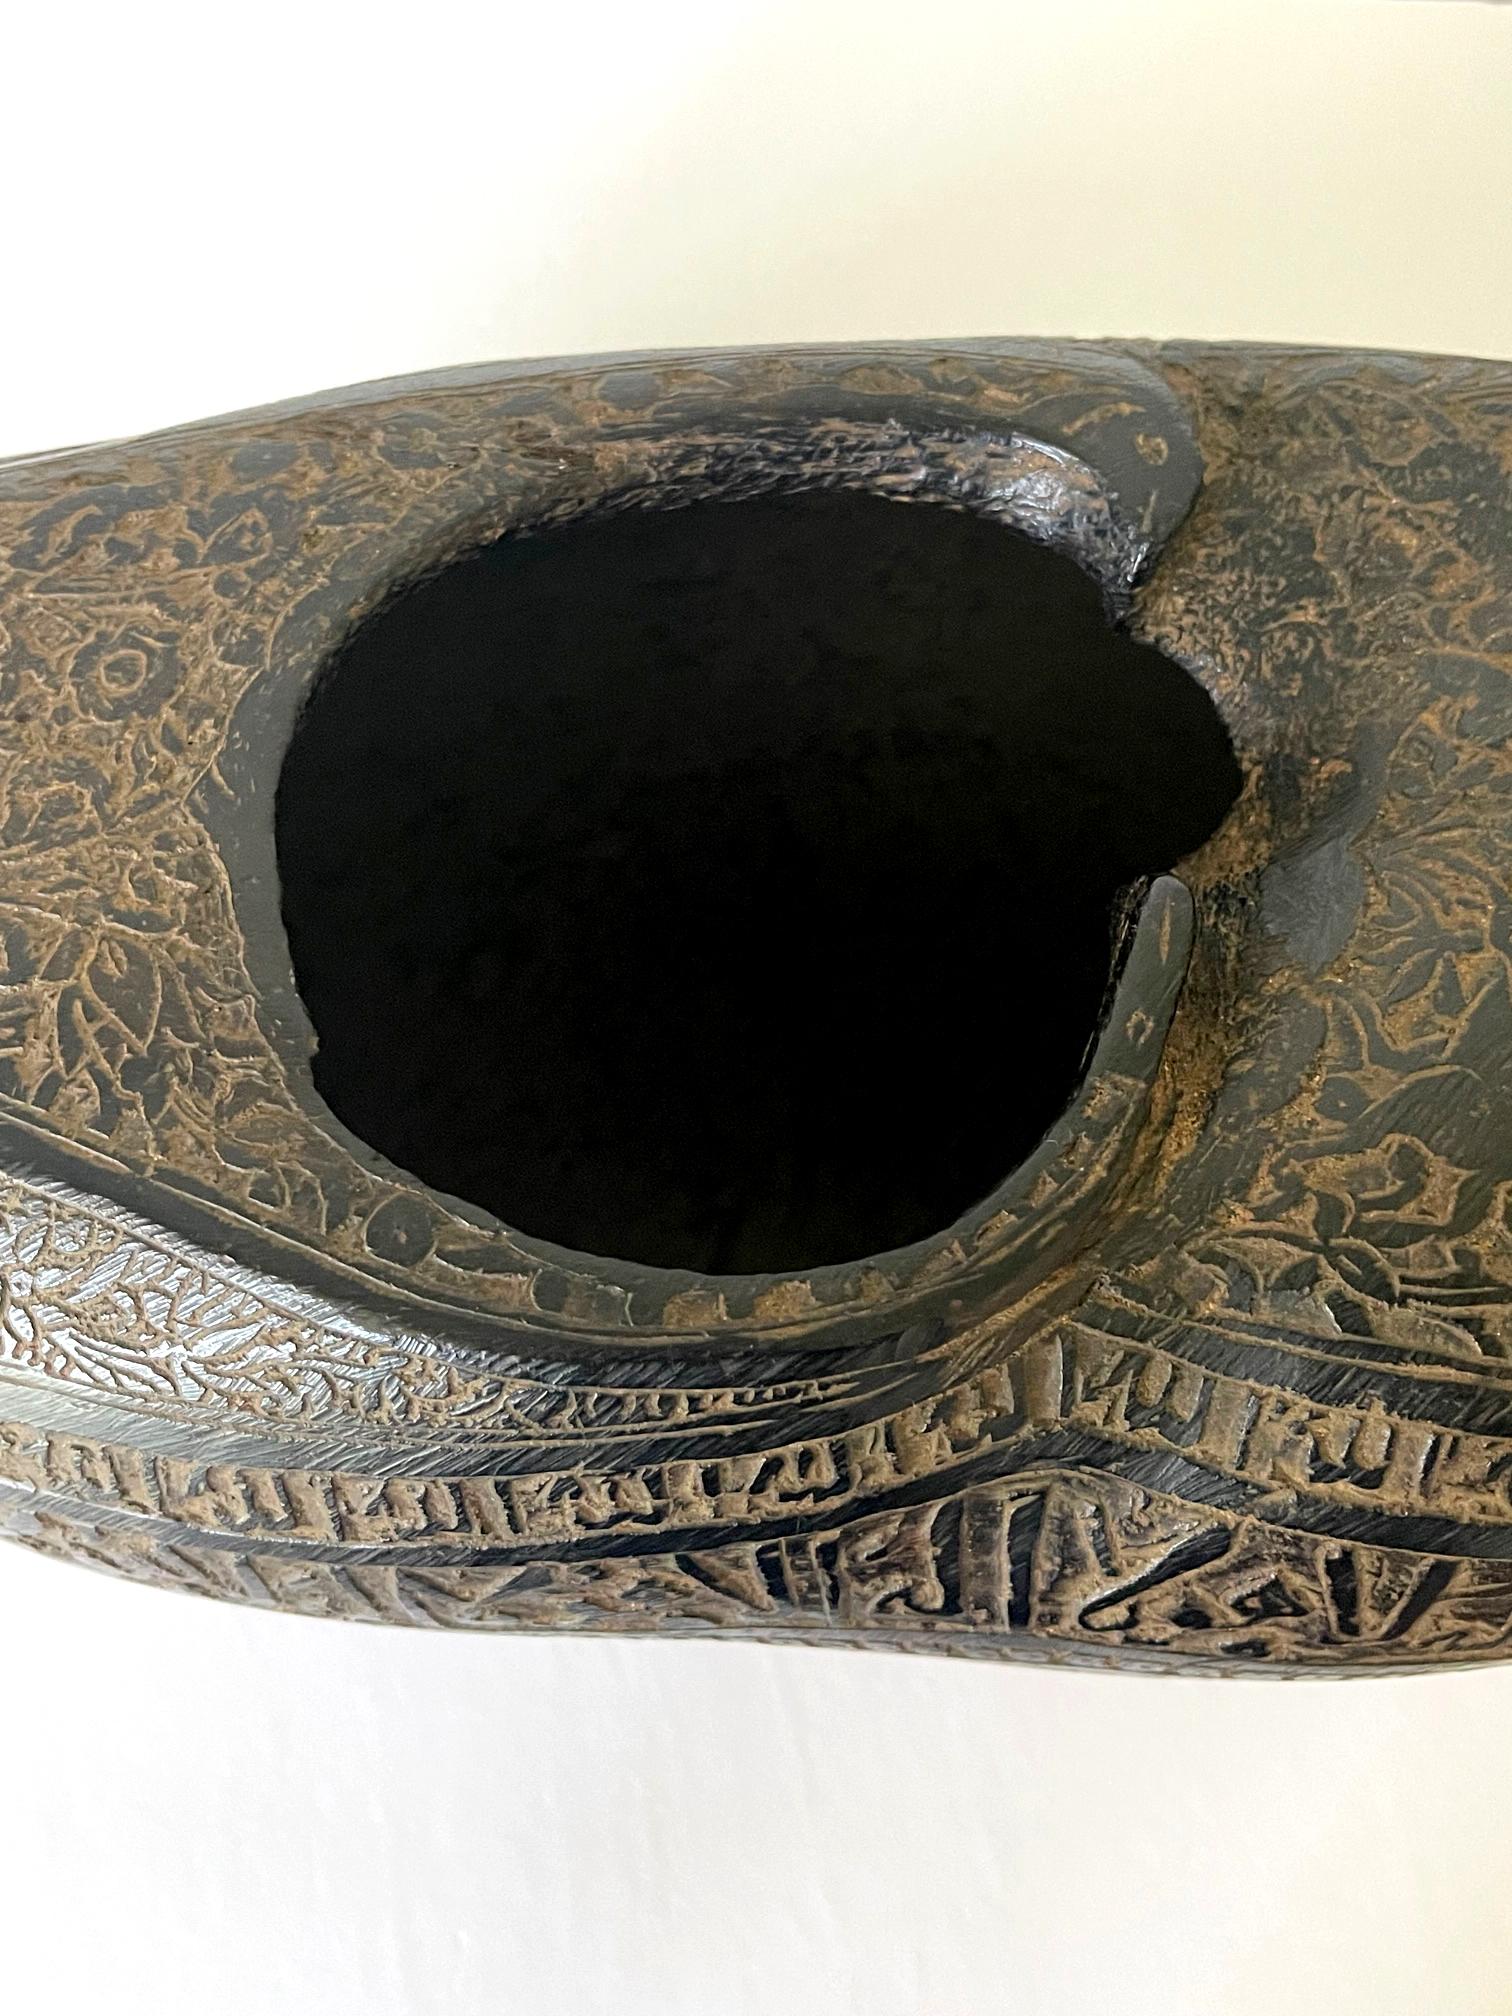 Elaborately Carved Antique Beggar's Bowl Kashkul For Sale 2